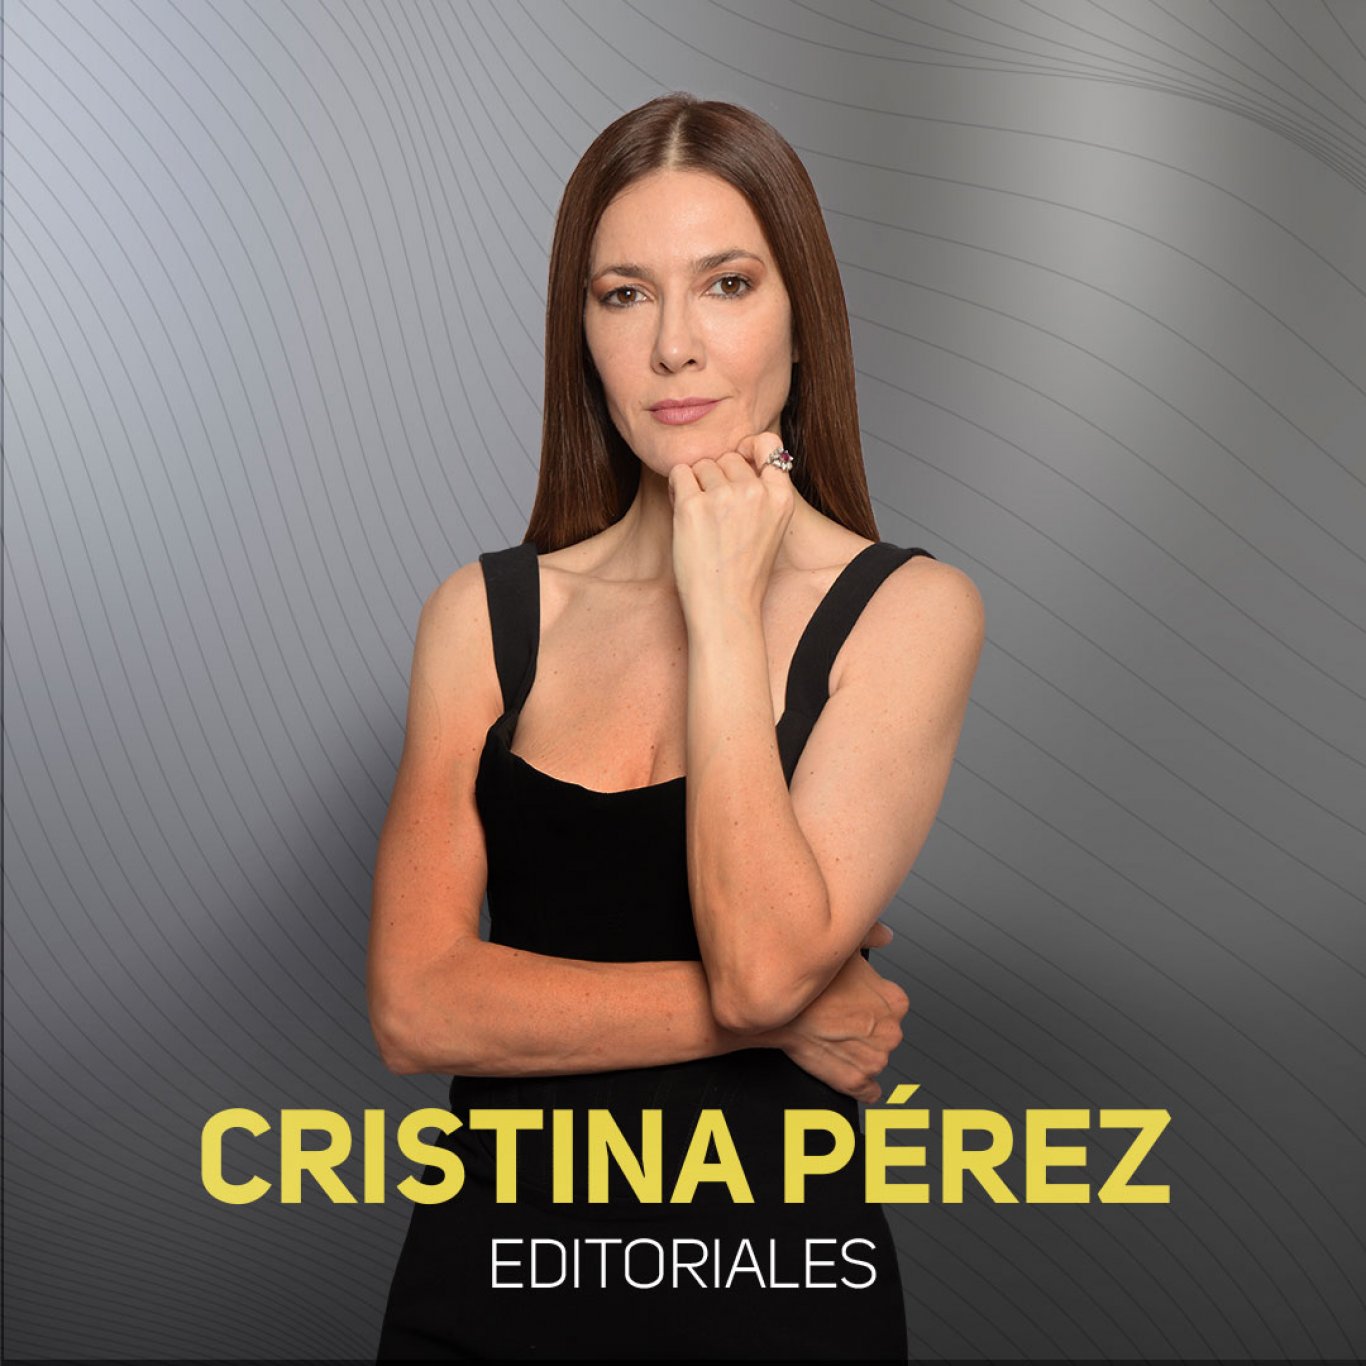 Radio Rivadavia y las editoriales de Cristina Pérez